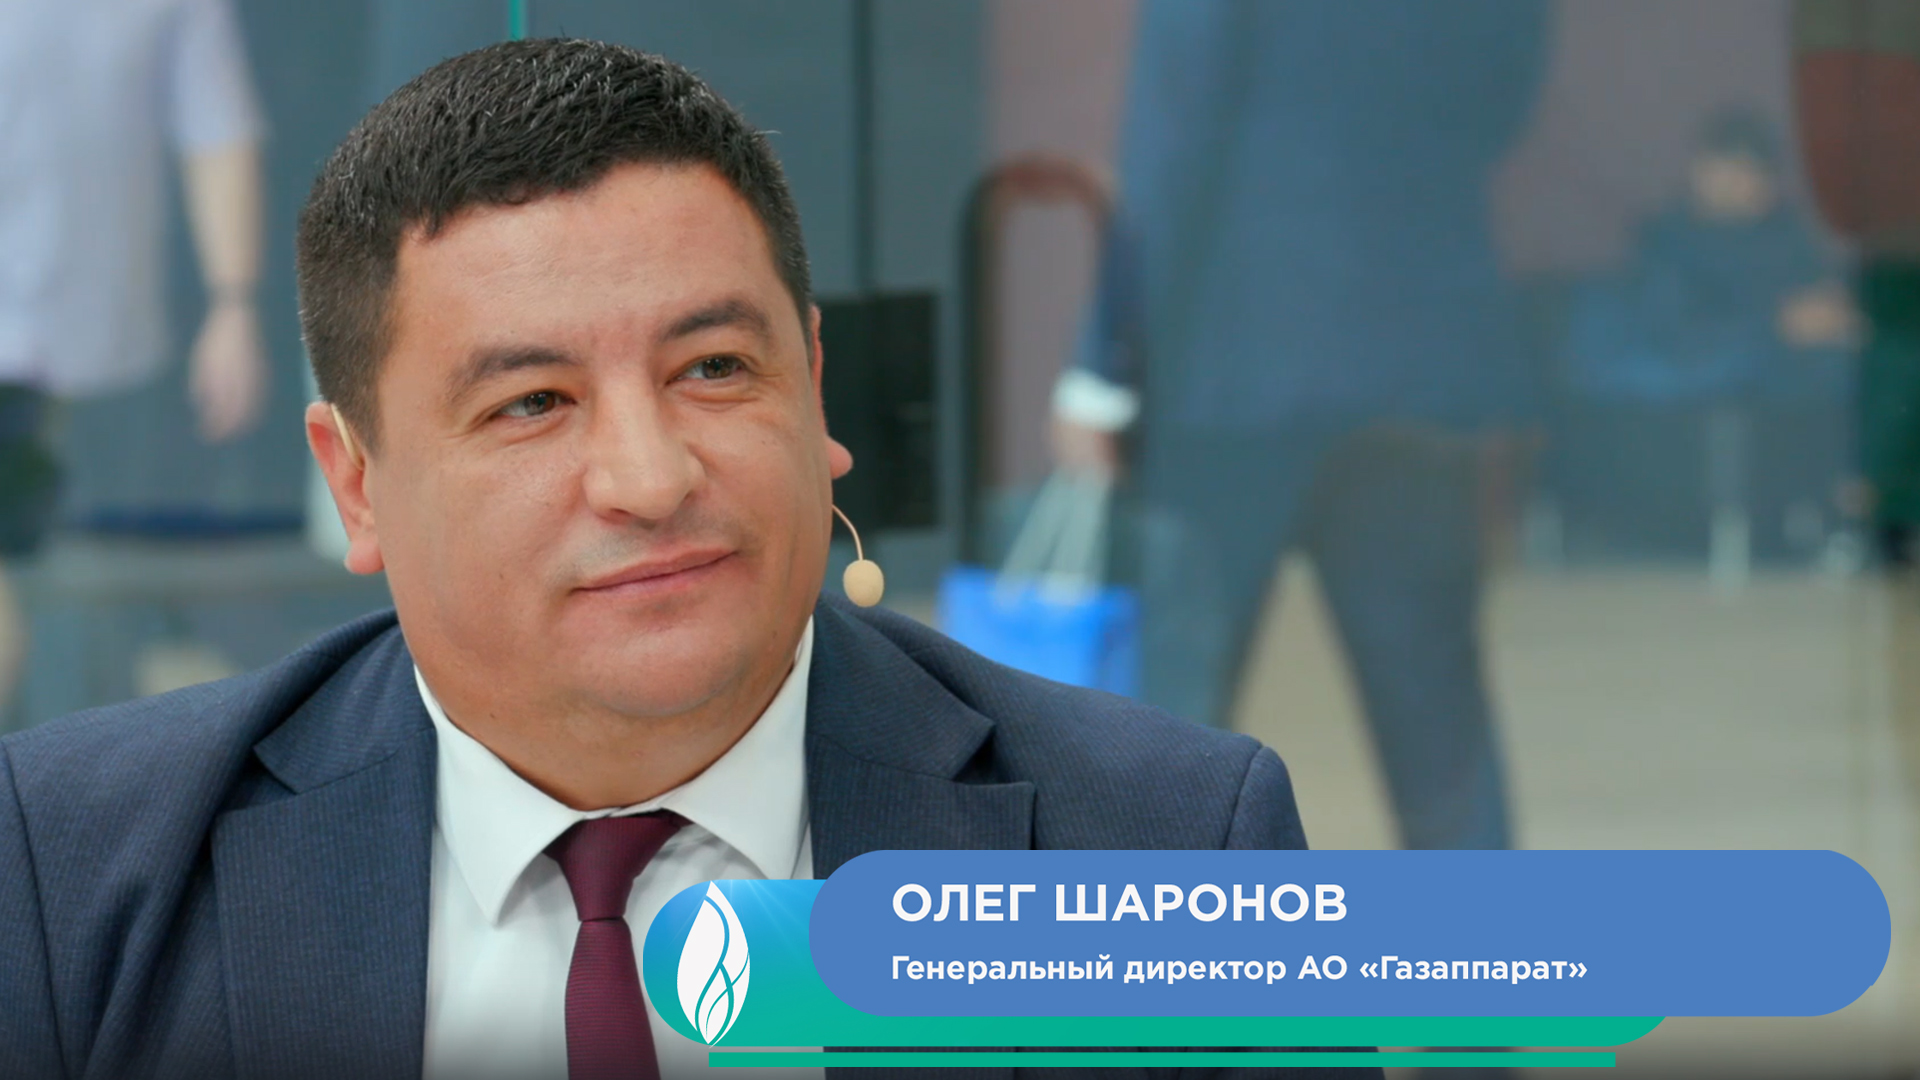 Олег Шаронов, генеральный директор АО «Газаппарат»